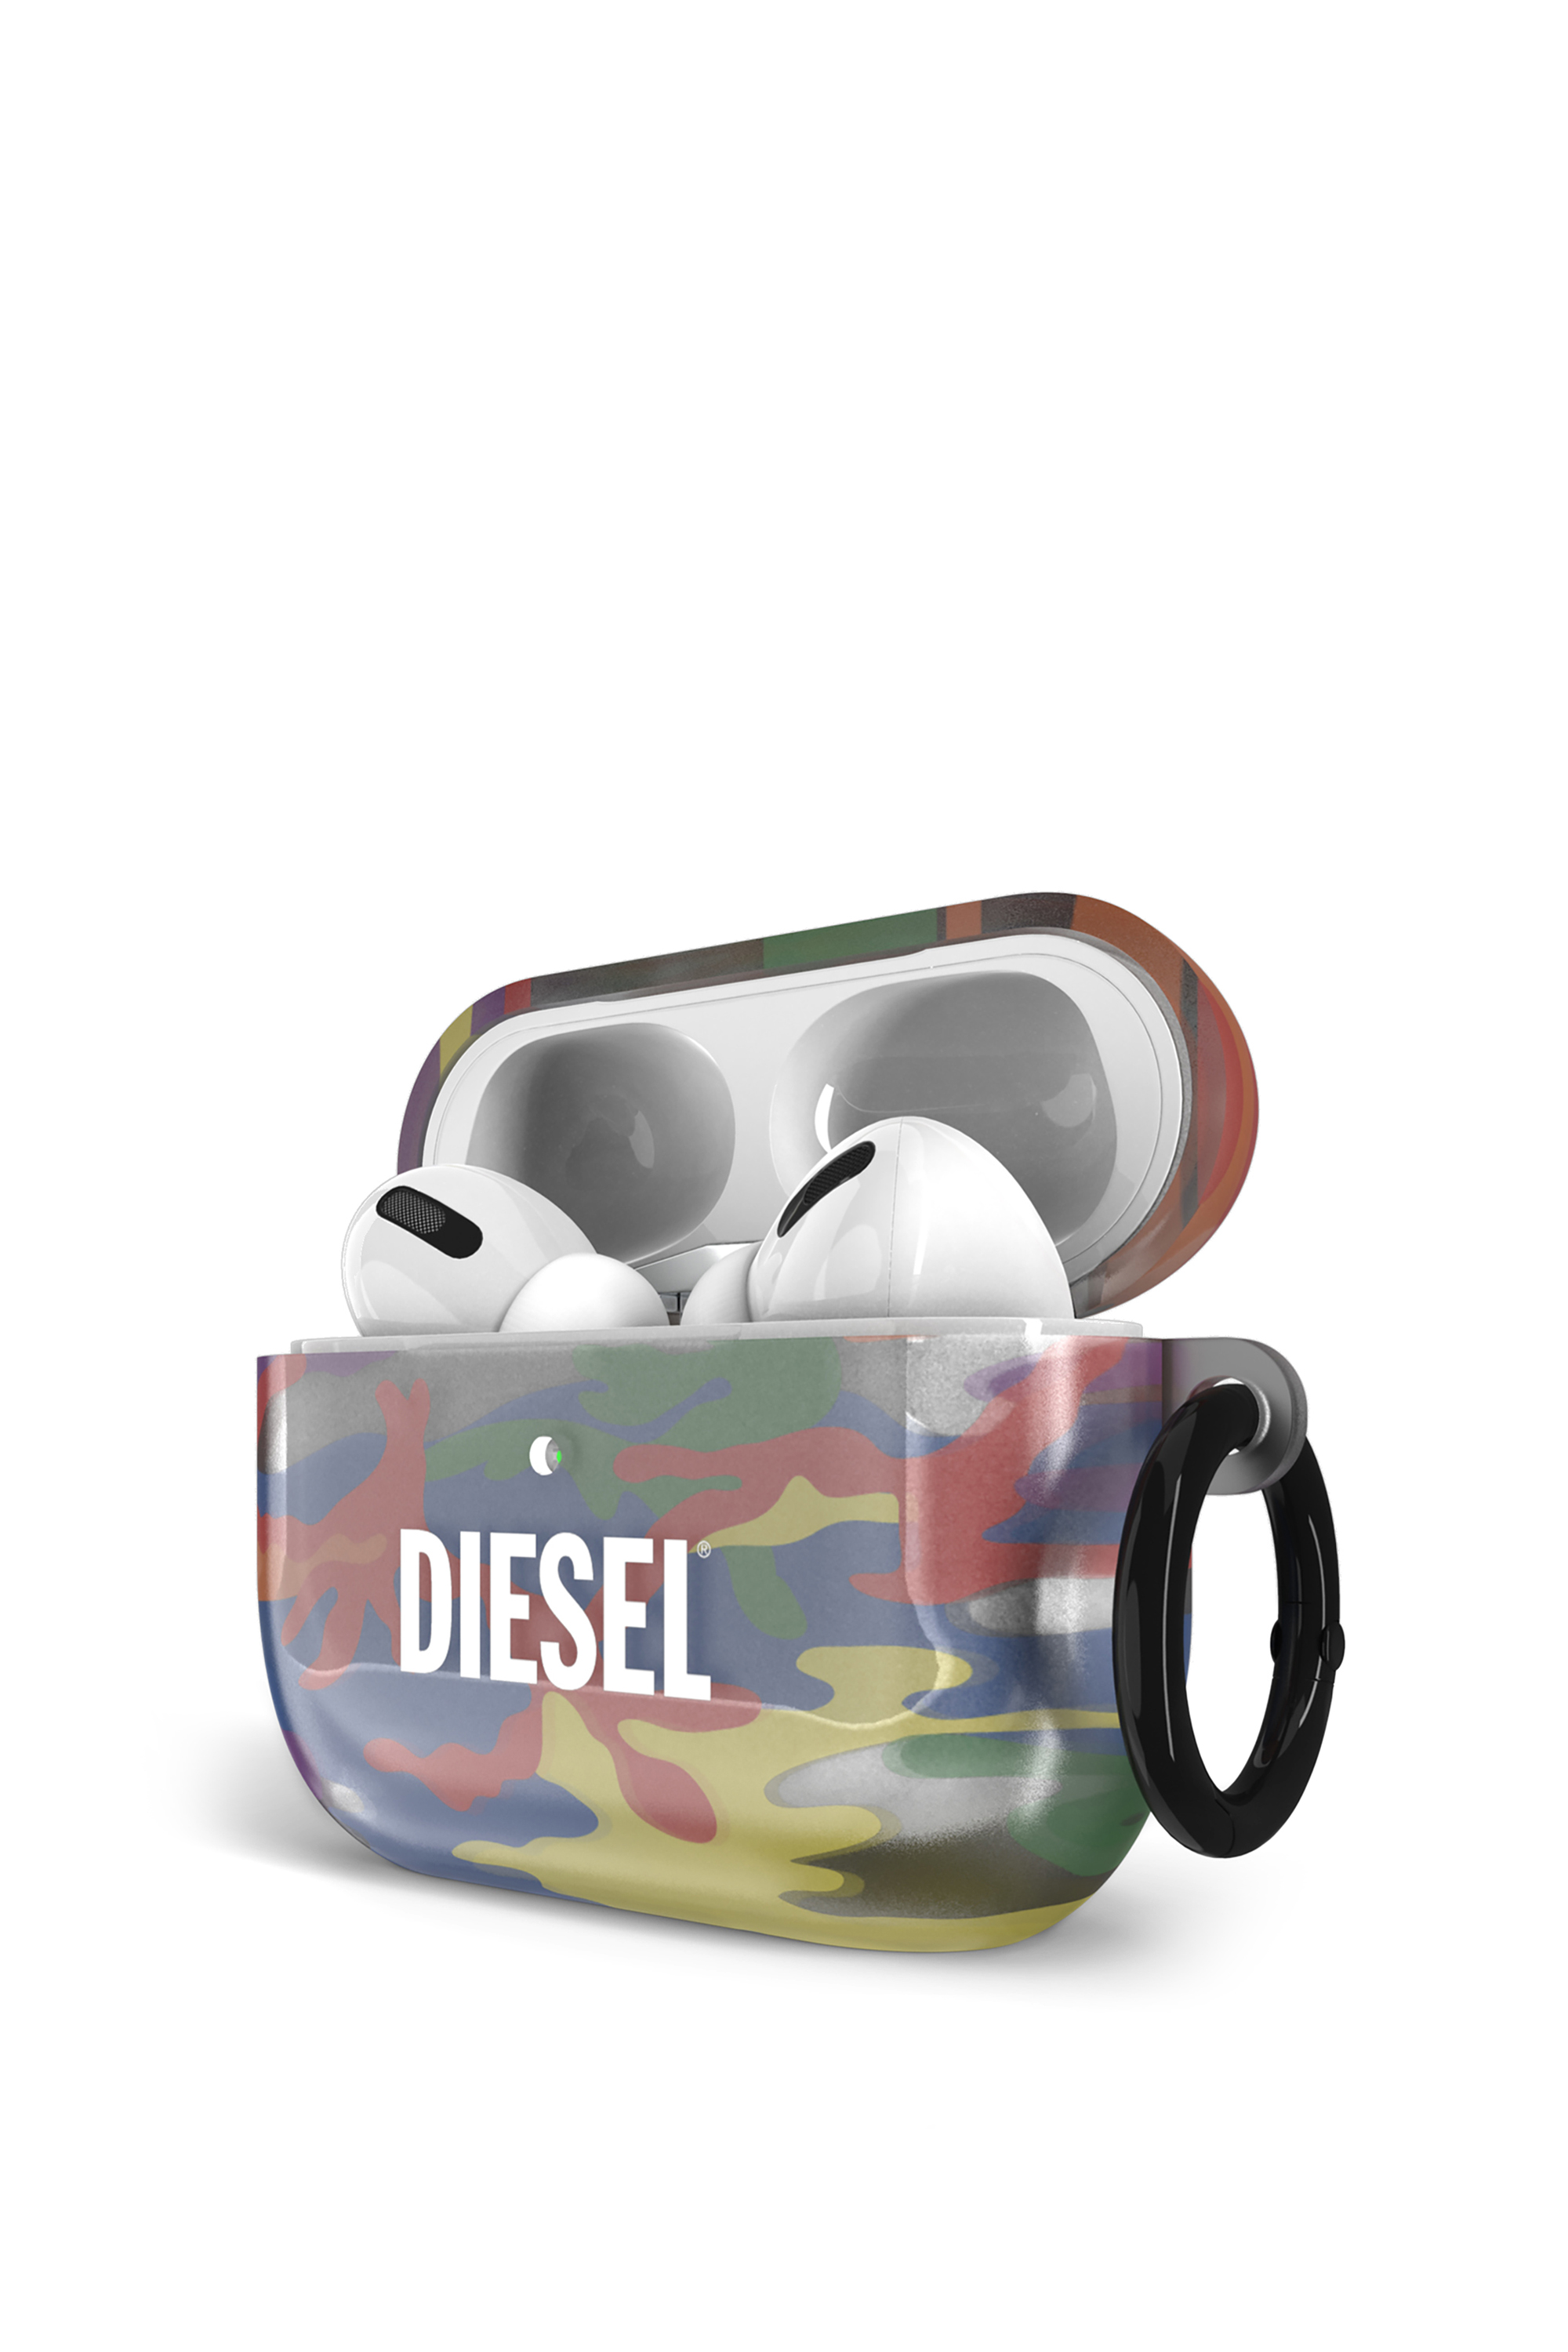 Diesel - 44344   AIRPOD CASE,  - Image 3